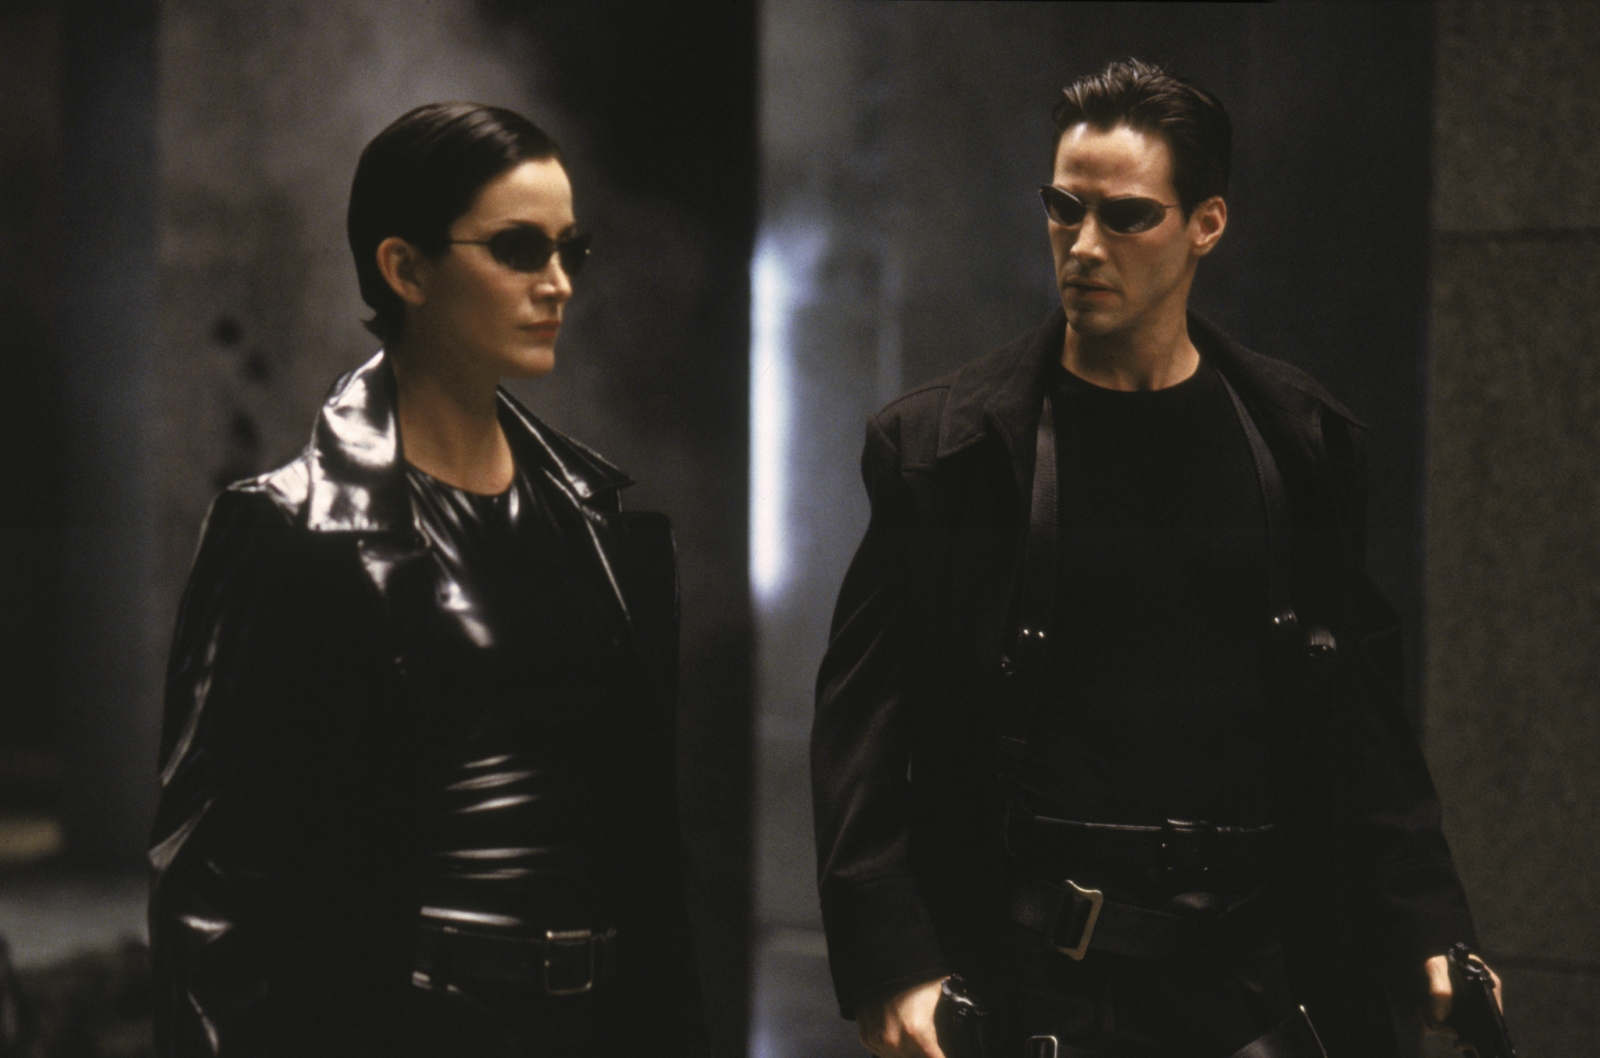 Kadr z filmu "Matrix". Obok siebie stoją kobieta i mężczyzna (główny bohater - Neo) w czarnych strojach i okularach.